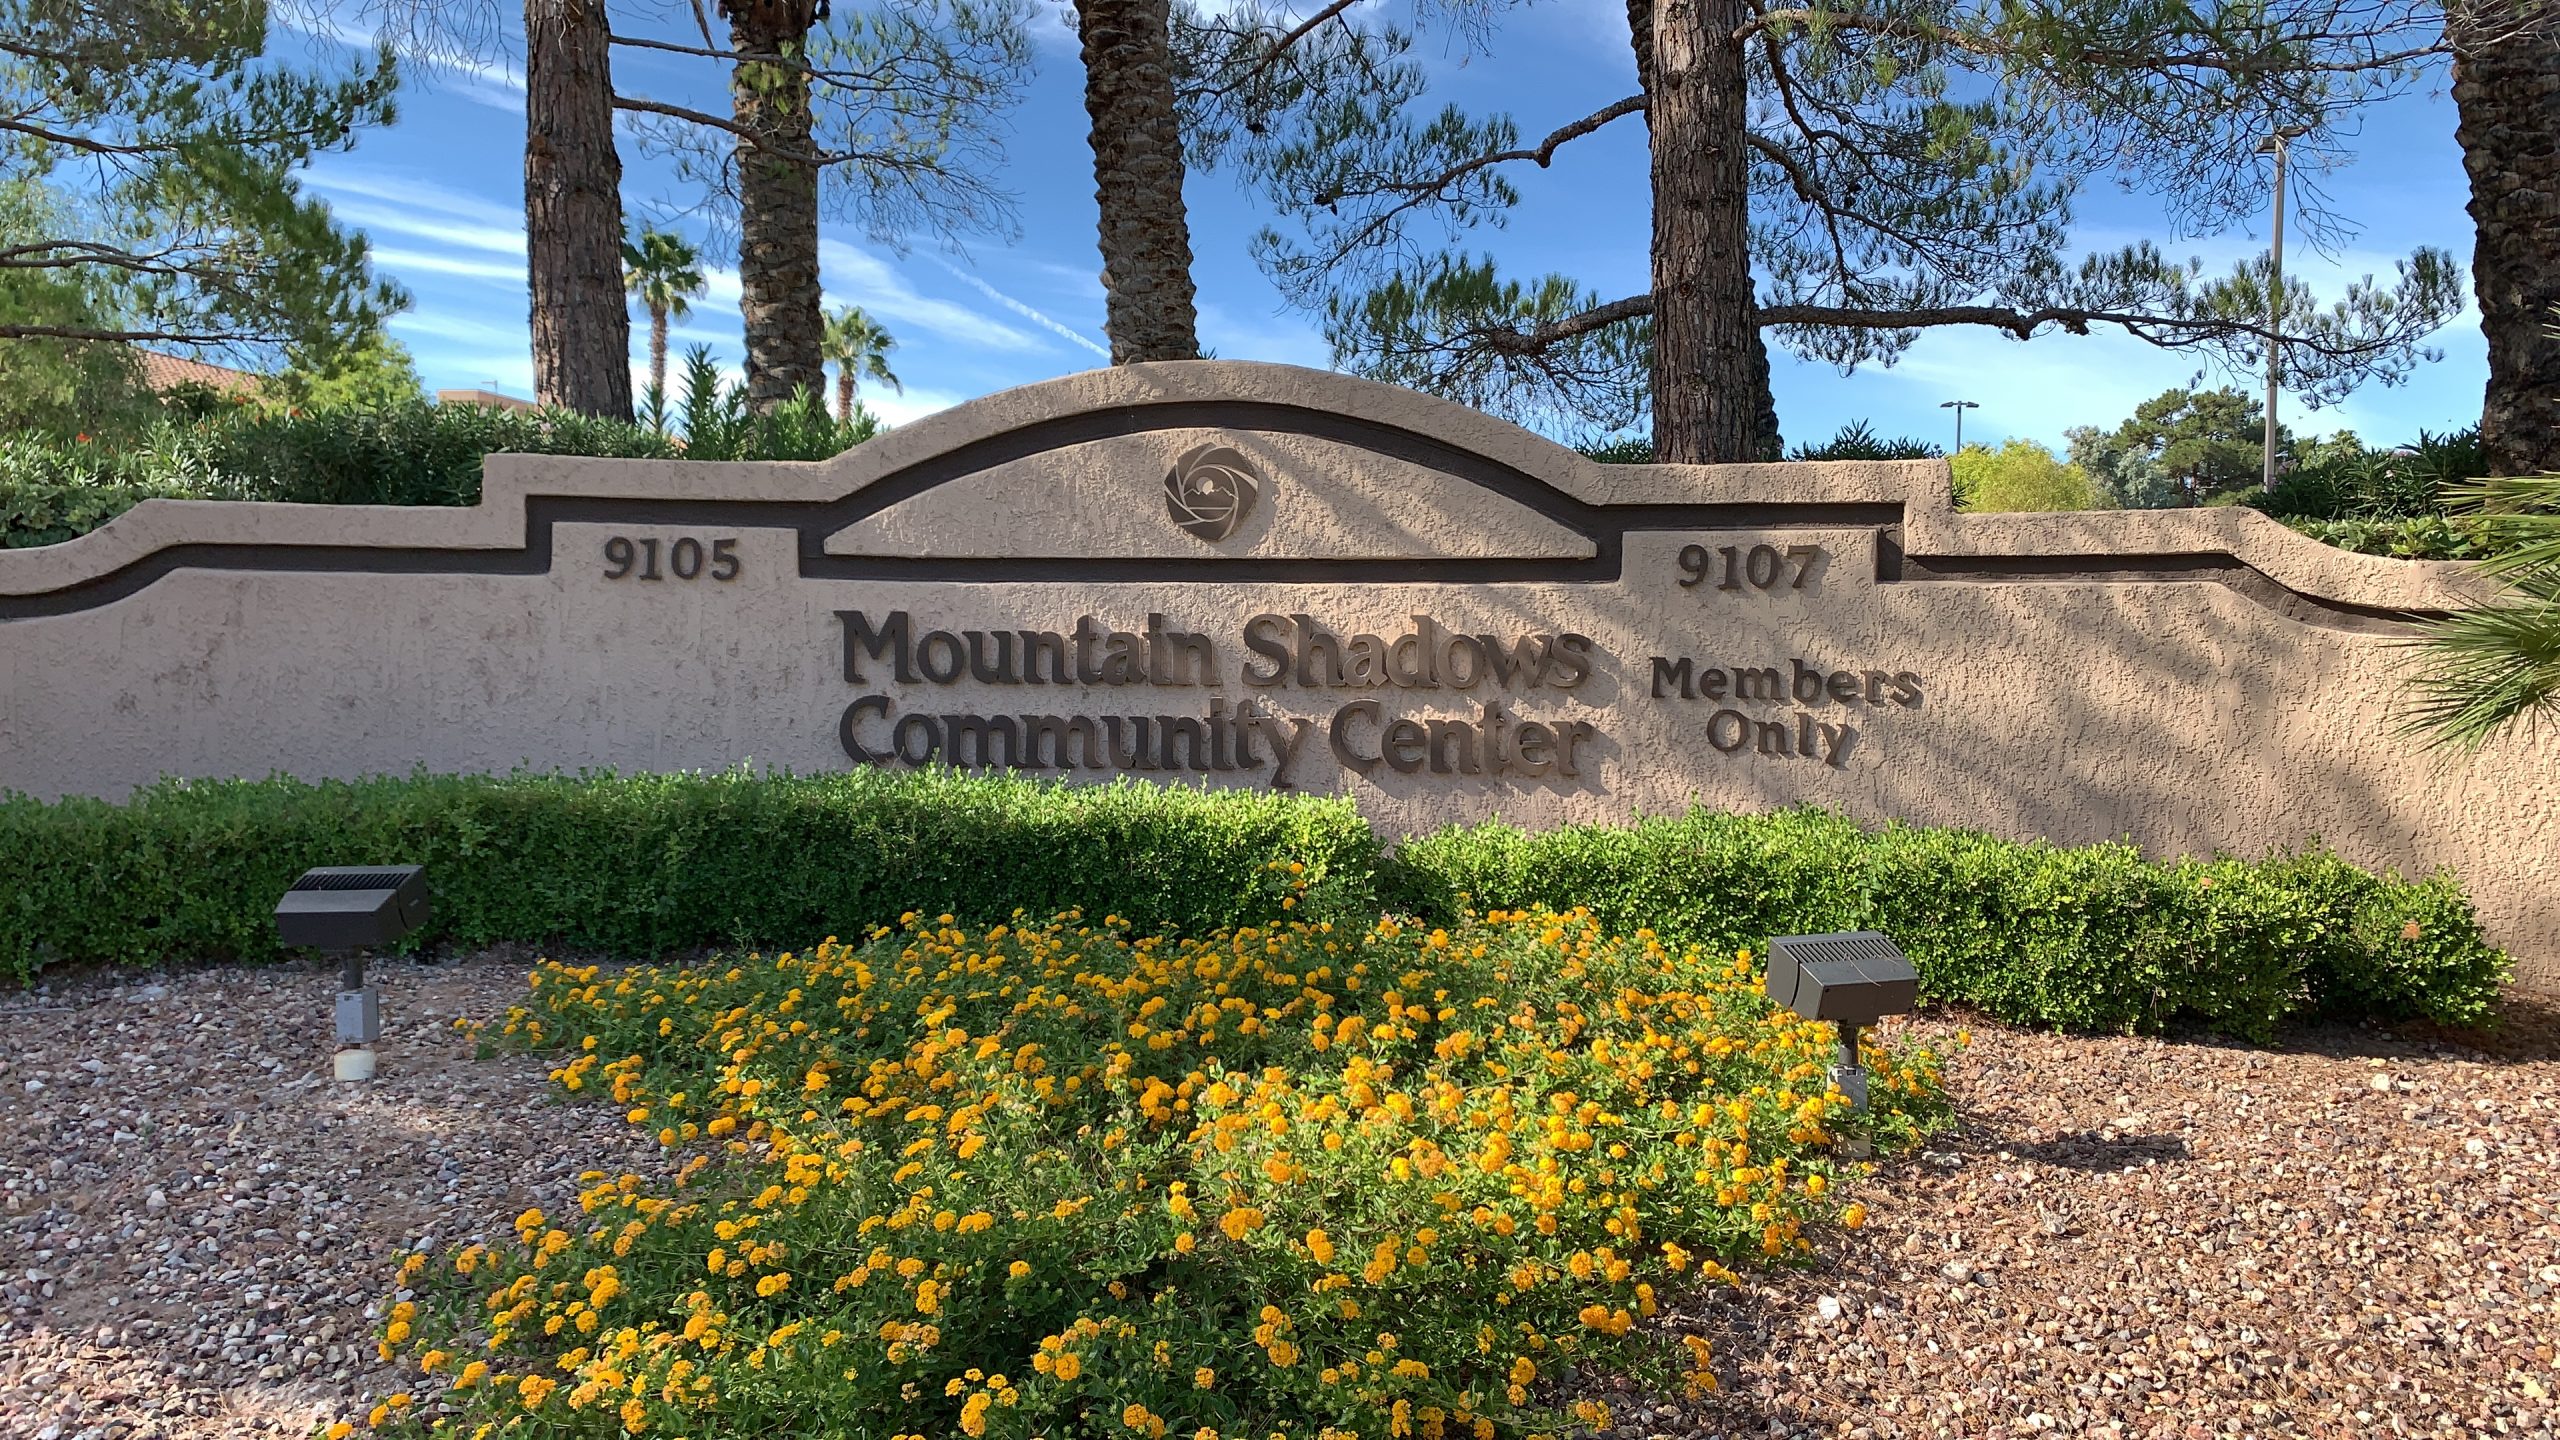 Mountain Shadows Community Center